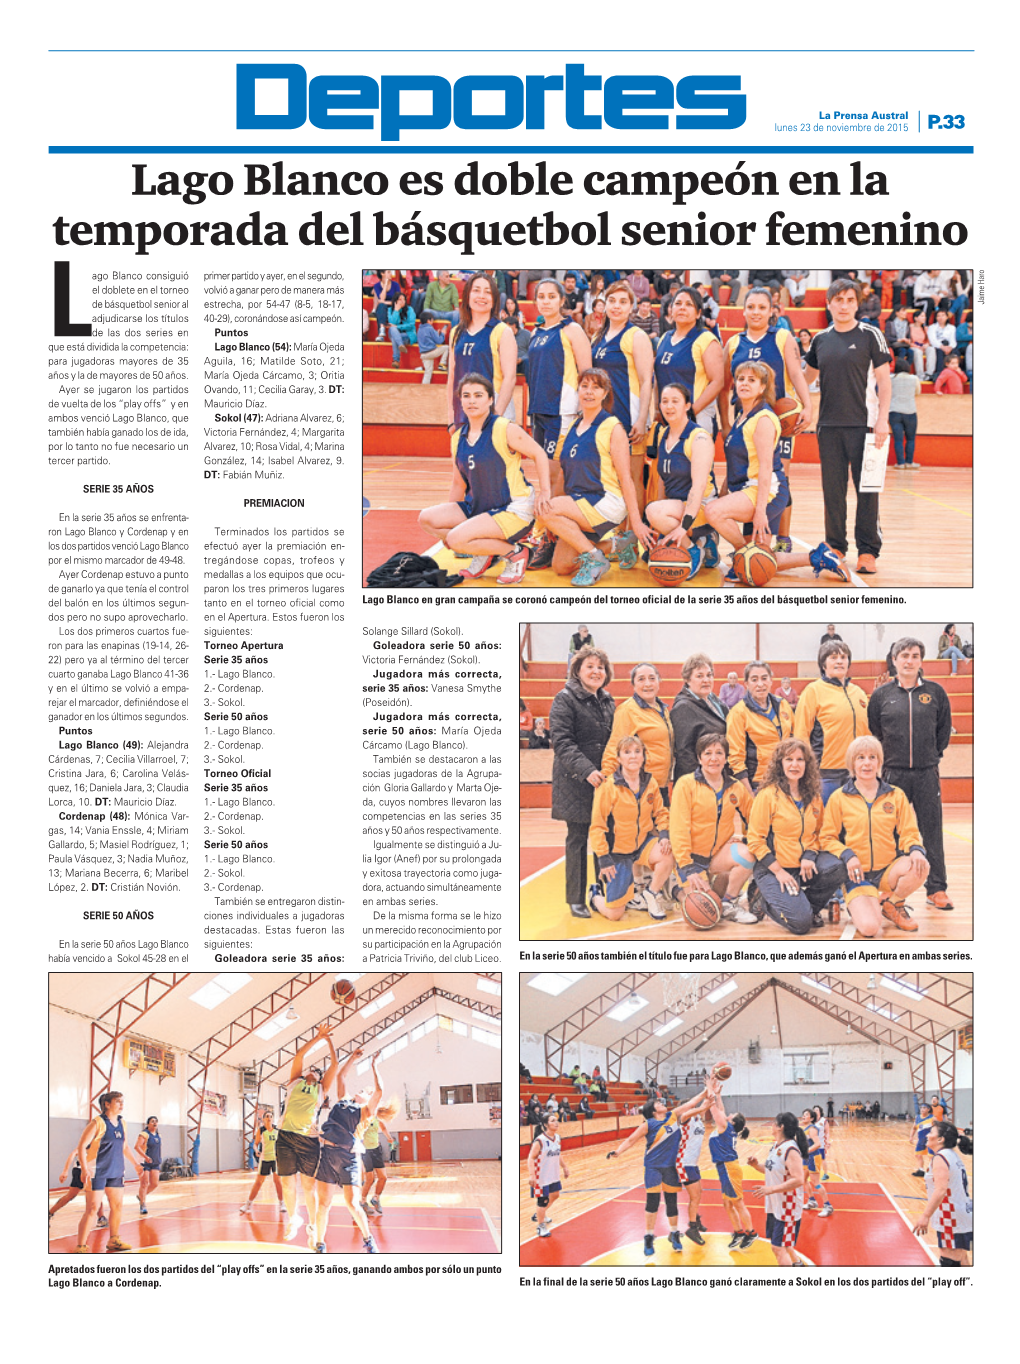 Lago Blanco Es Doble Campeón En La Temporada Del Básquetbol Senior Femenino